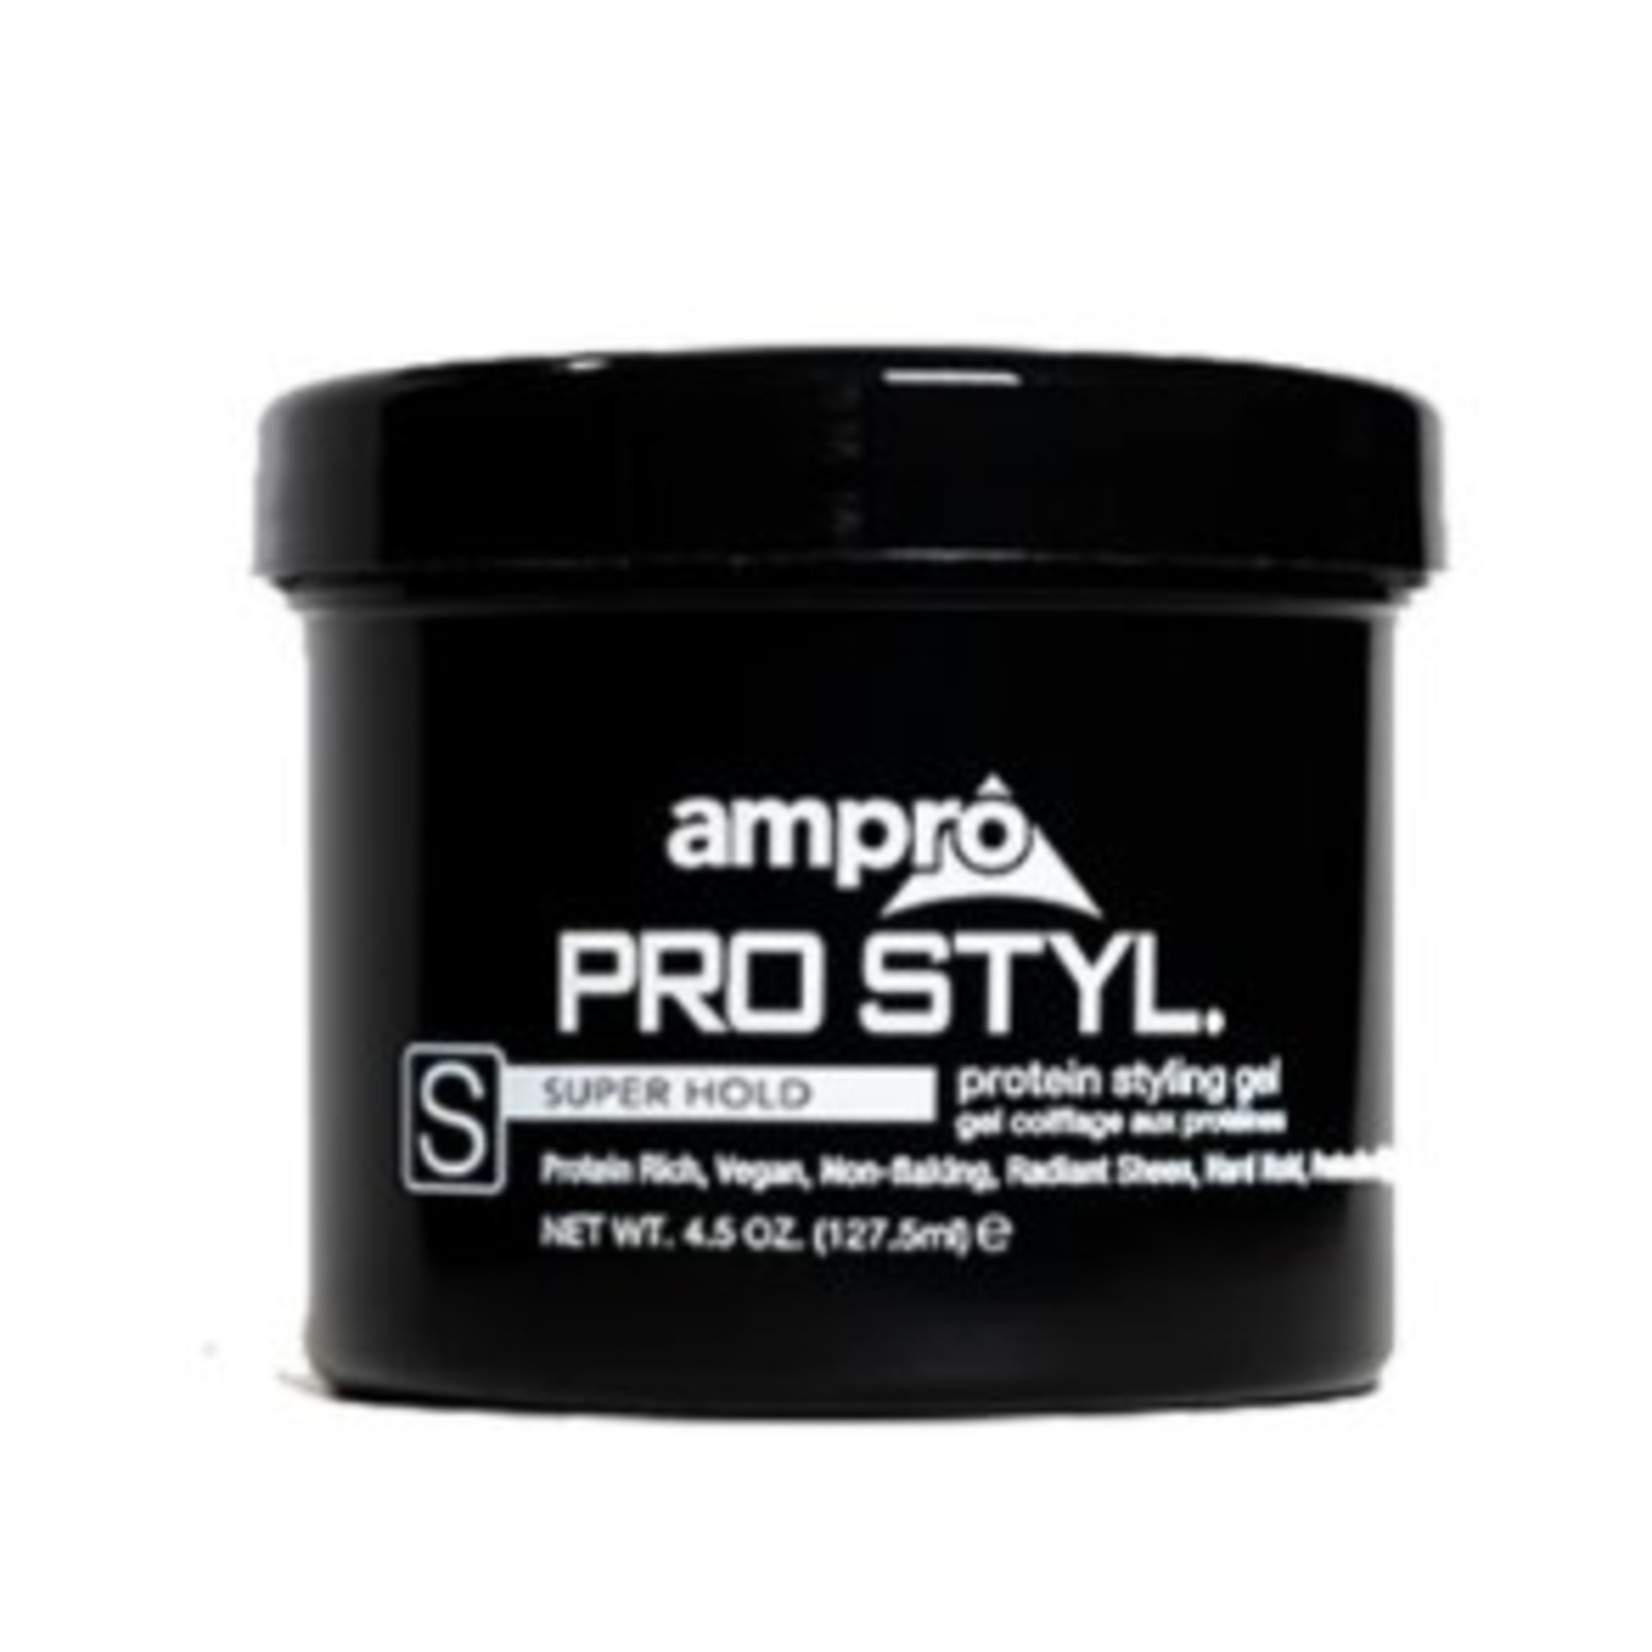 Ampro AMPRO Pro Super Hold Gel 6 oz